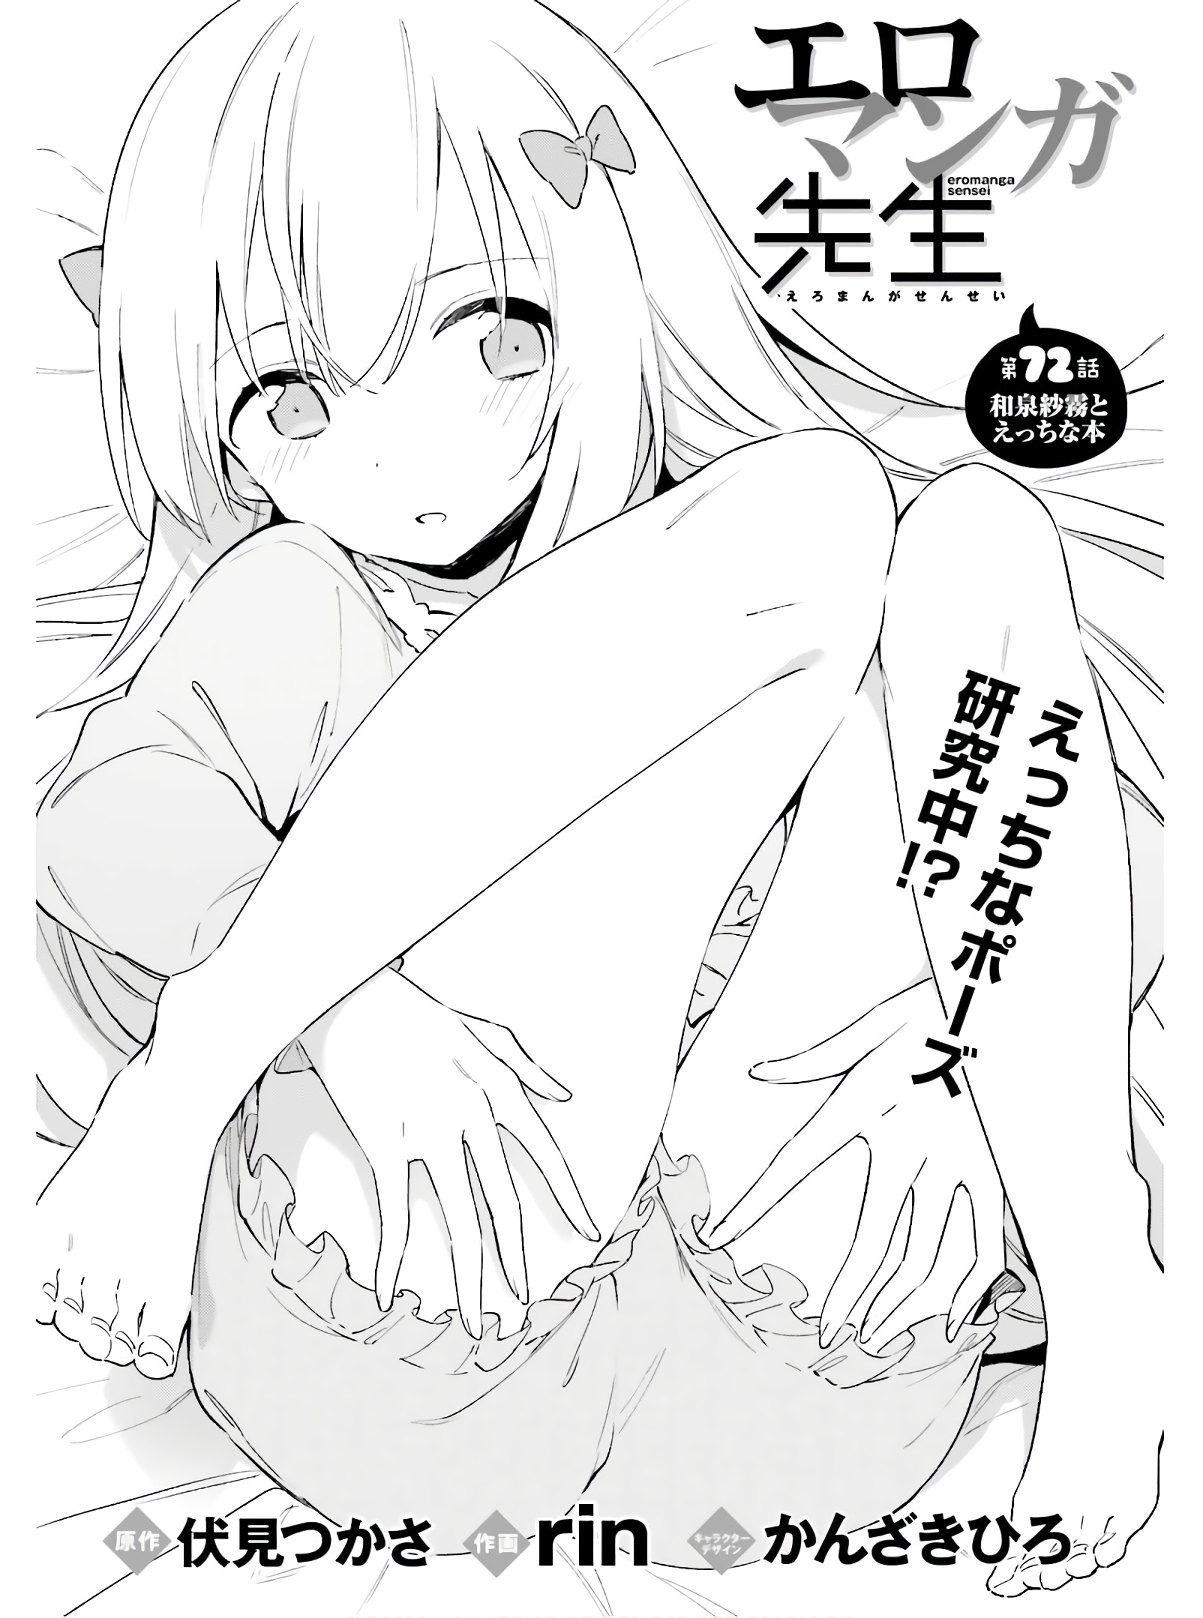 Ero Manga Sensei - Chapter 72 - Page 4